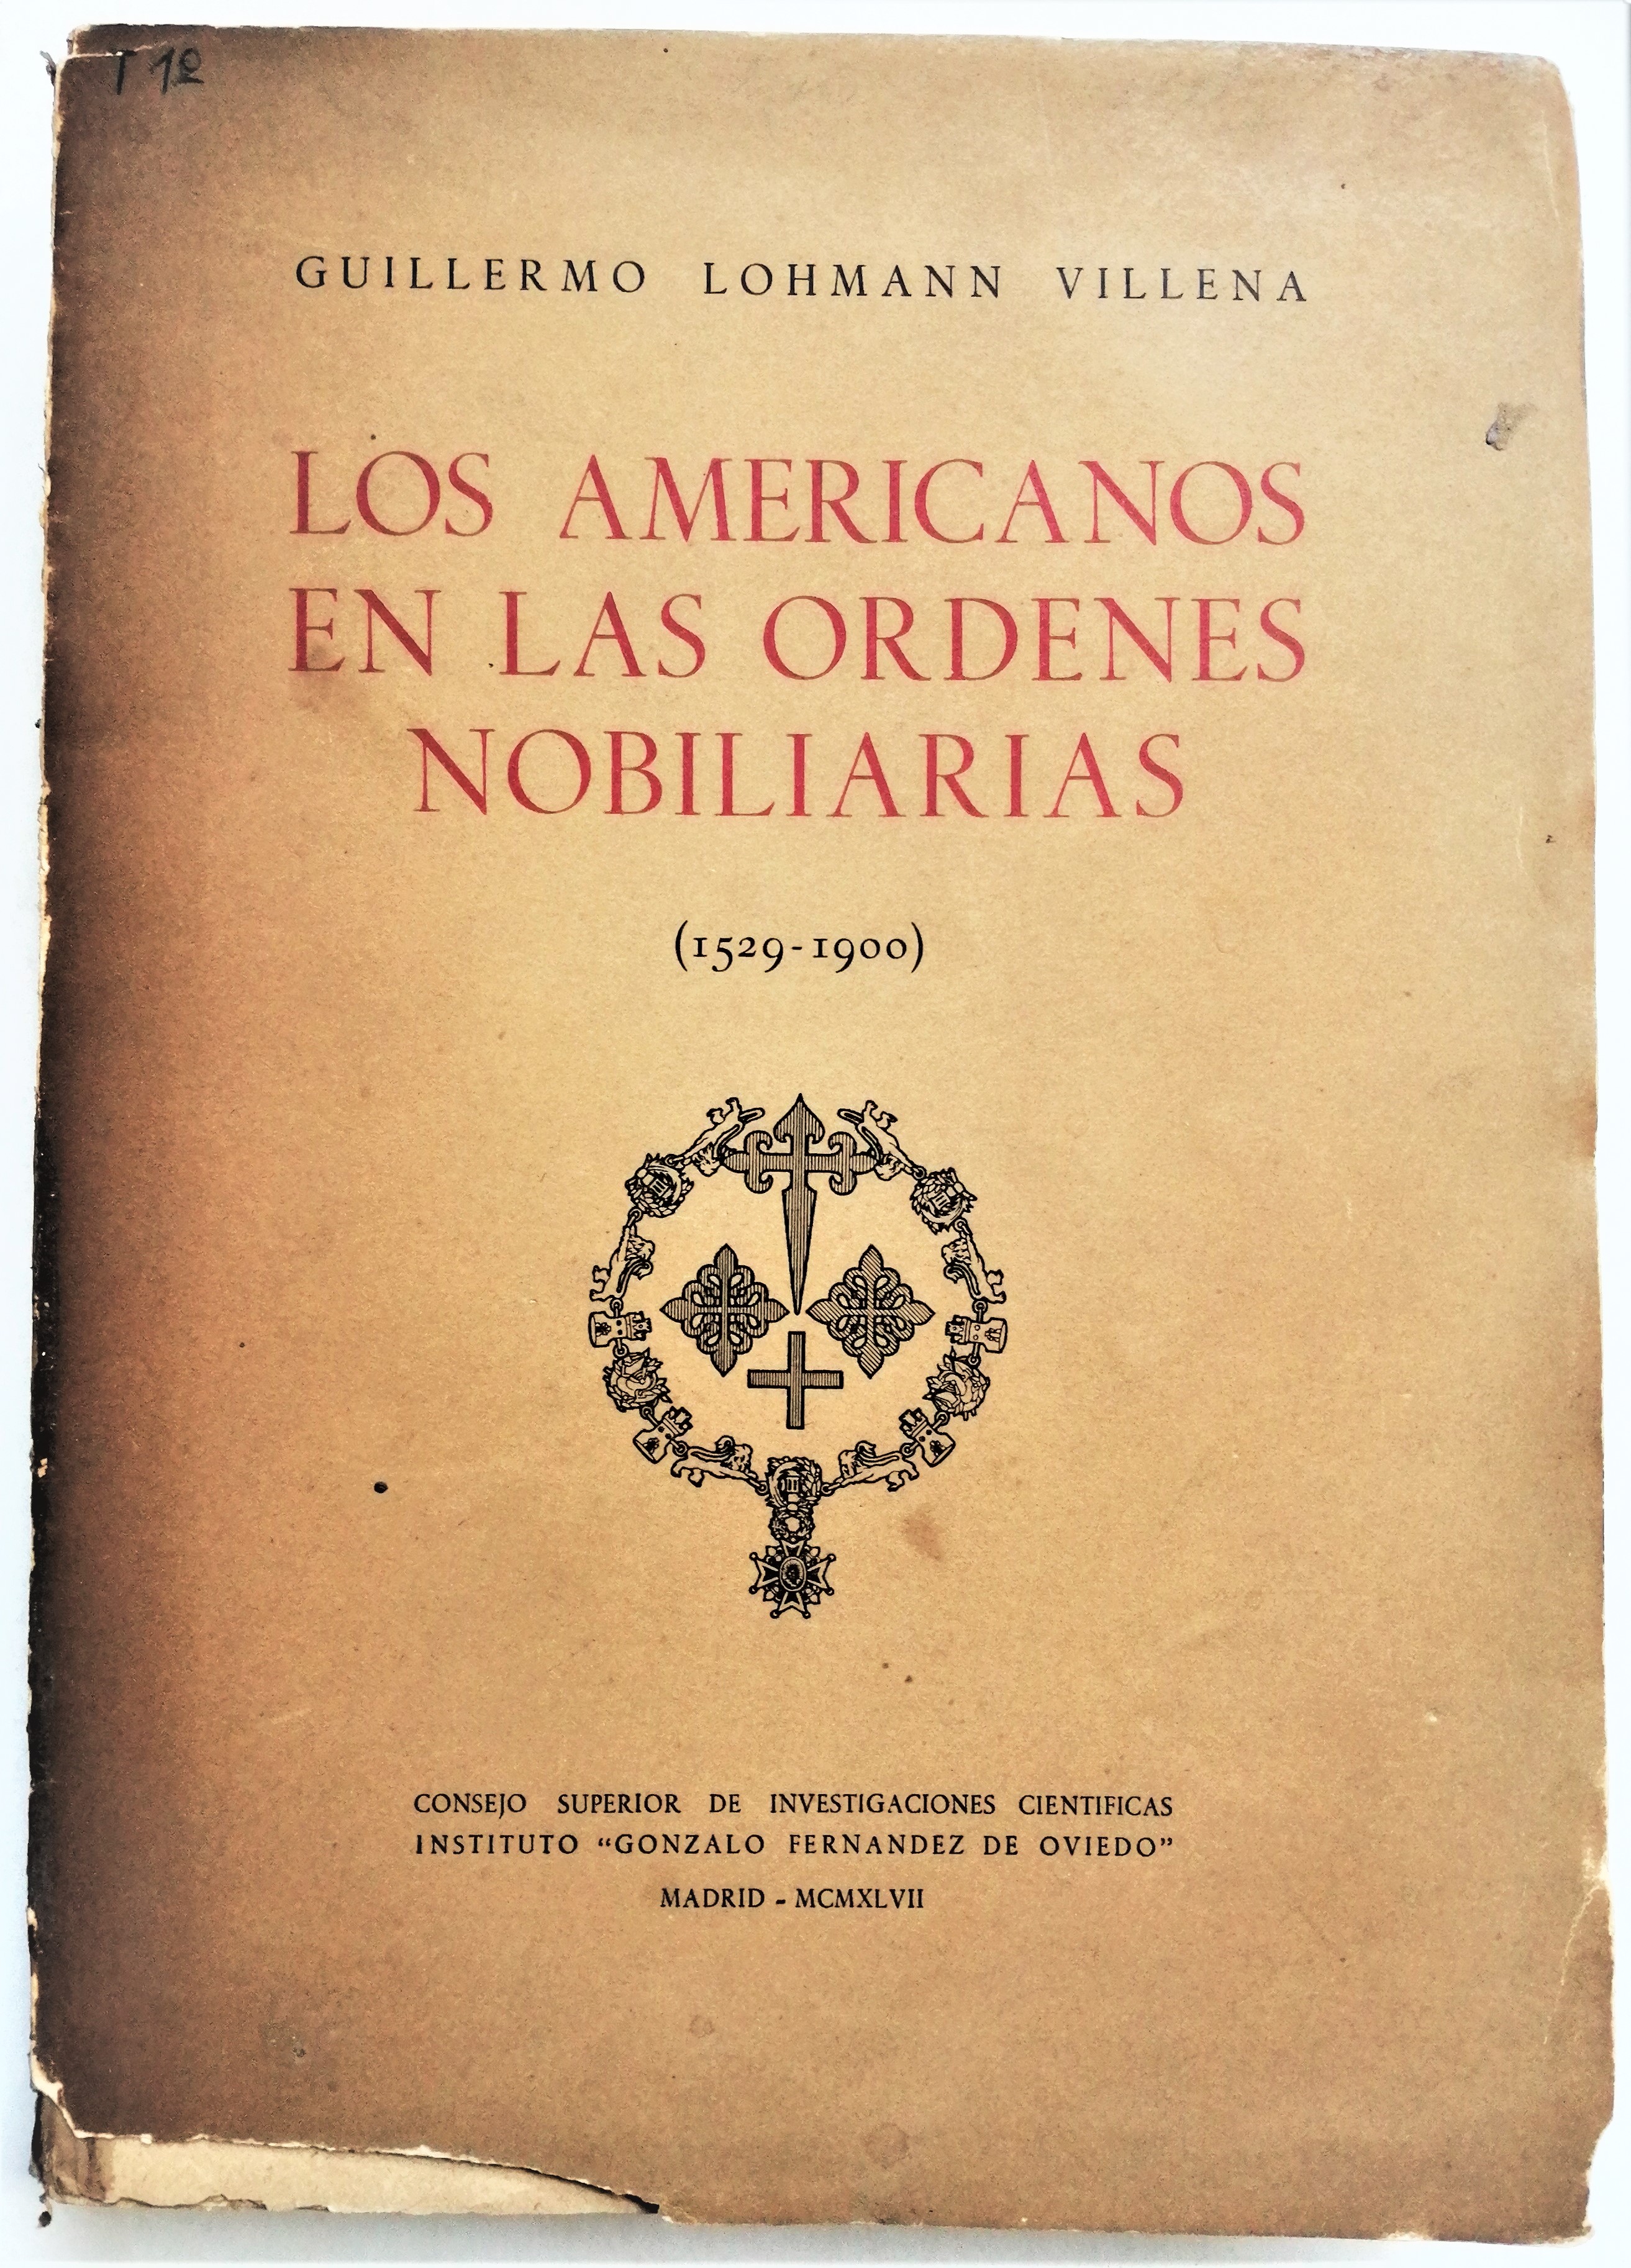 Guillermo Lohmann Villena - Los Americanos en las ordenes nobiliarias (1529 - 1900)